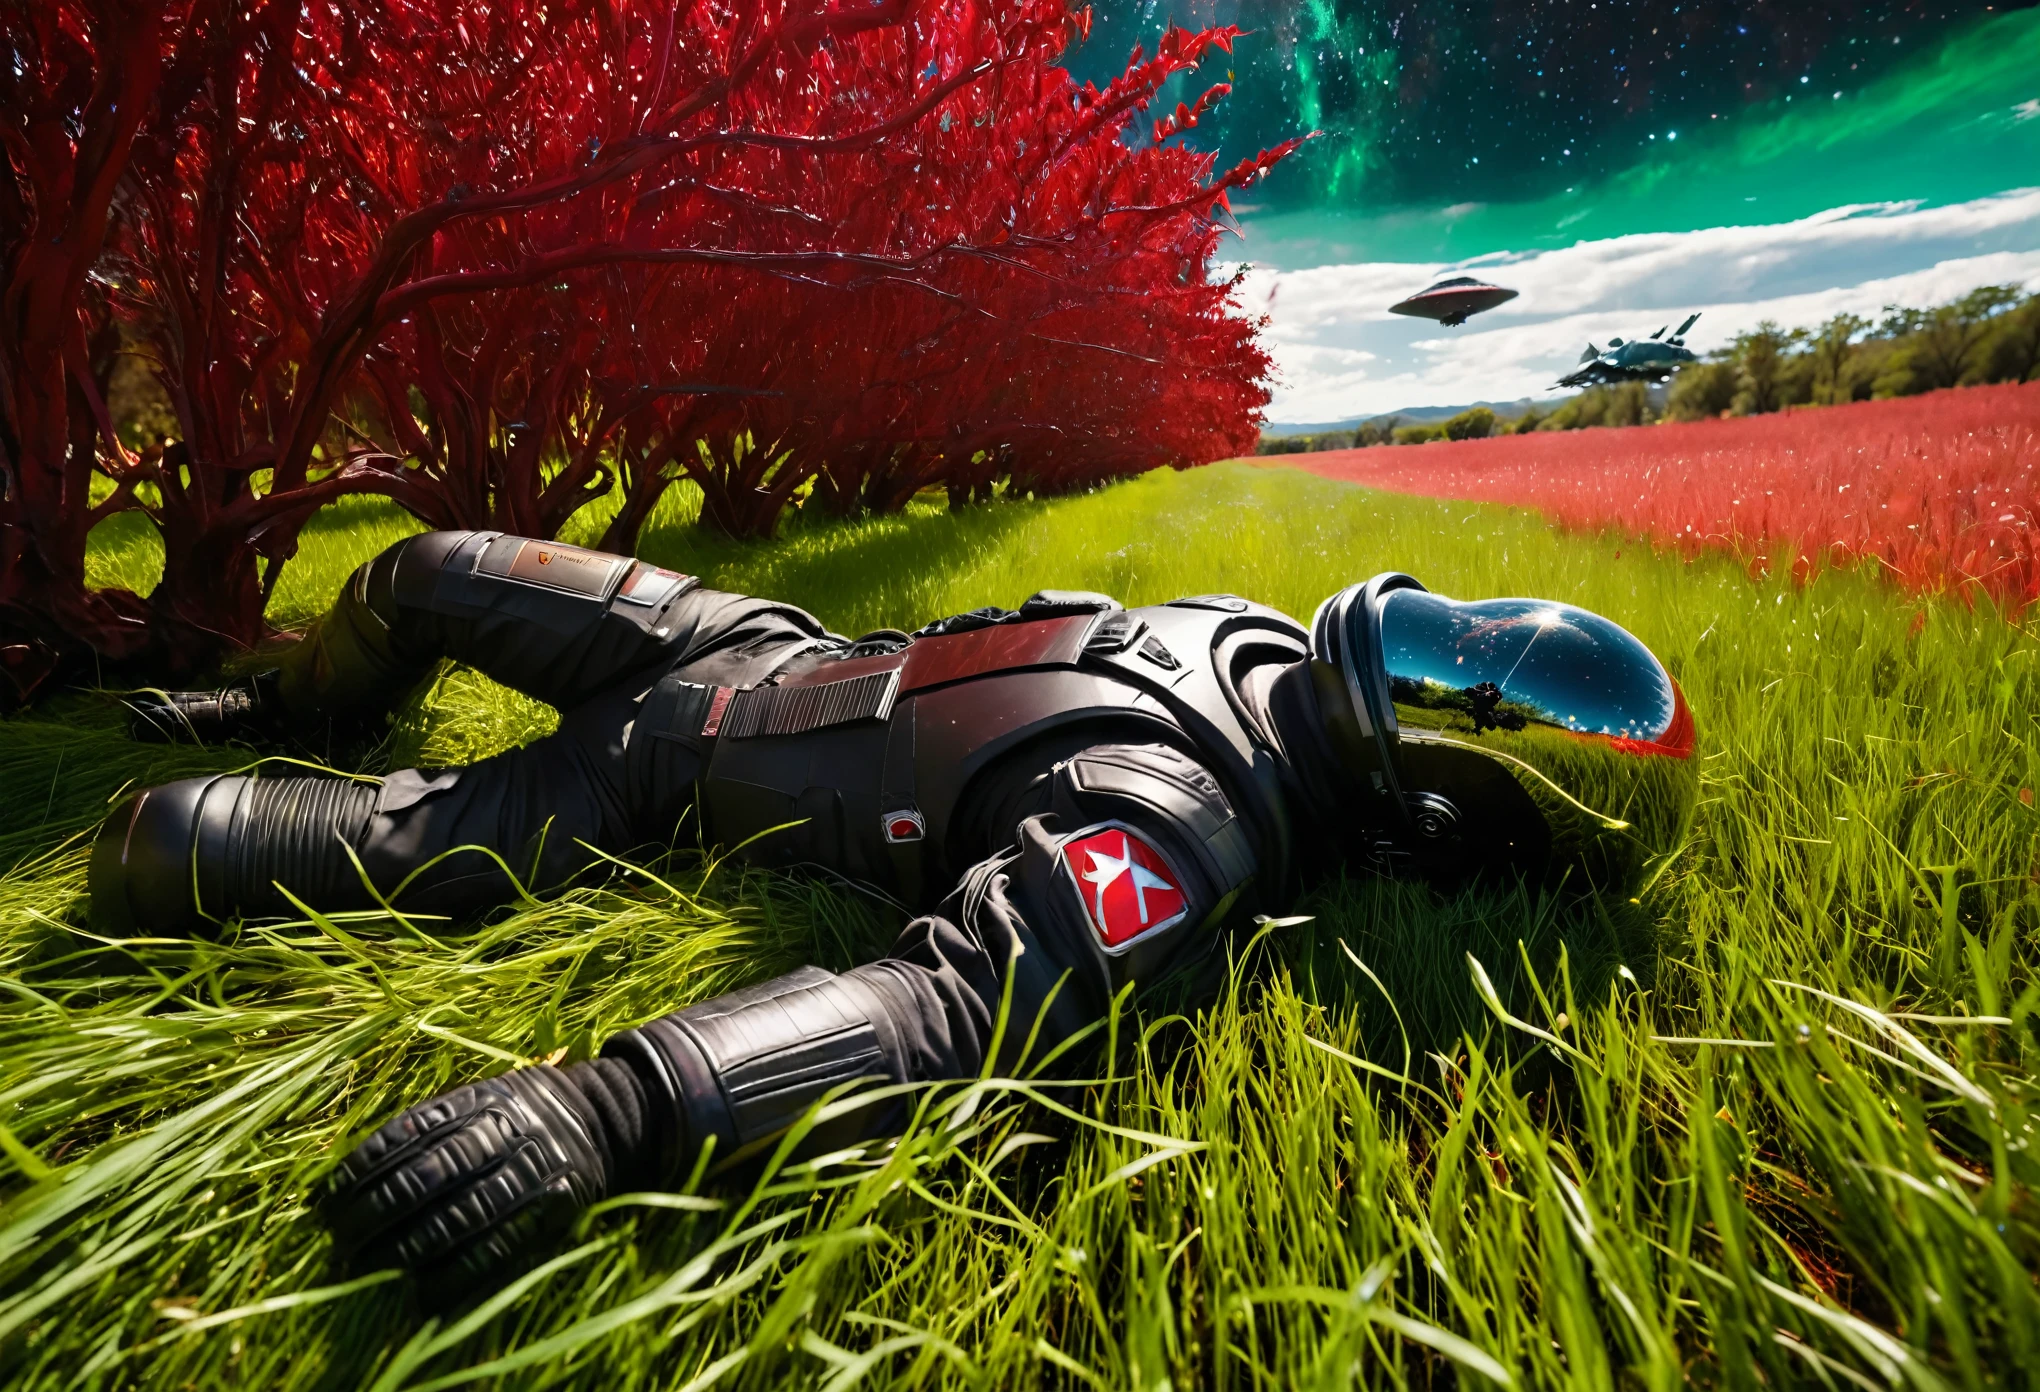 (最好的质量,4K,8千,高分辨率,杰作:1.2),极其详细,实际的:1.37,广角镜头：一名身穿黑色宇航服的男子躺在红色草地上的一棵红树旁。,一艘绿色的星舰降落在背景中, 电影帧,锐利的目光,详细的宇航服设计,奇怪的气氛,超现实元素,令人印象深刻的视角,一束光线穿过黑色宇航服,飞船表面的星光反射,红色树枝投下的淡淡阴影,茂密的绿草,细致的树皮纹理,鲜艳的红色调色板,天空中不祥的乌云,清晰的轮廓和清晰的景深,黑色宇航服和红色场地形成鲜明对比,引人入胜的科幻风景,未来而又神秘的环境.爬坡道